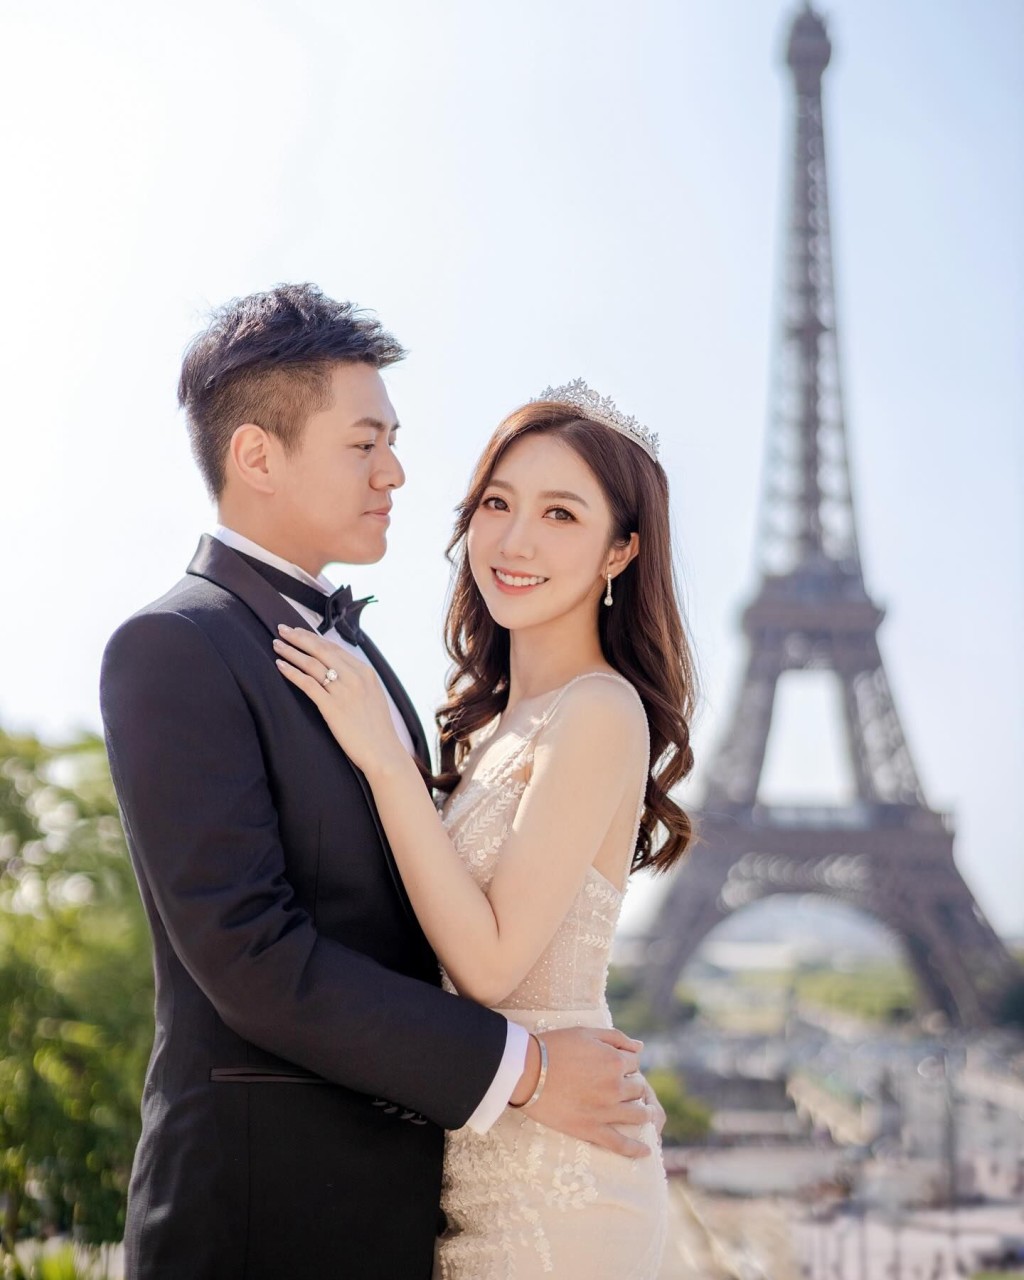 何依婷及林生于巴黎铁塔下影婚纱相。